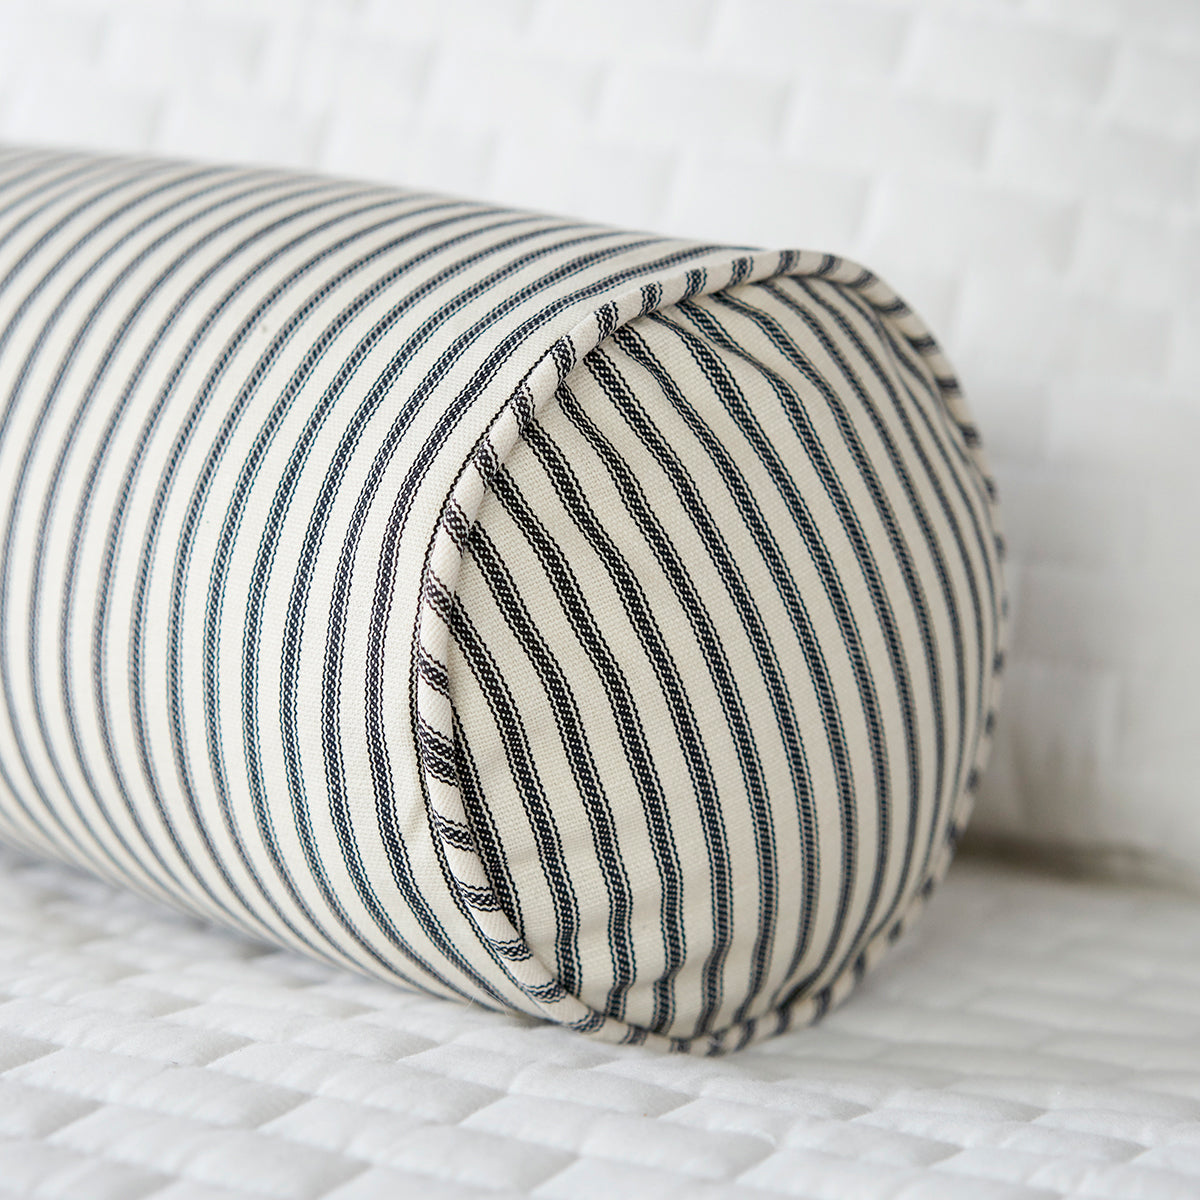 Black Ticking Stripe Bolster Pillow on White Bed